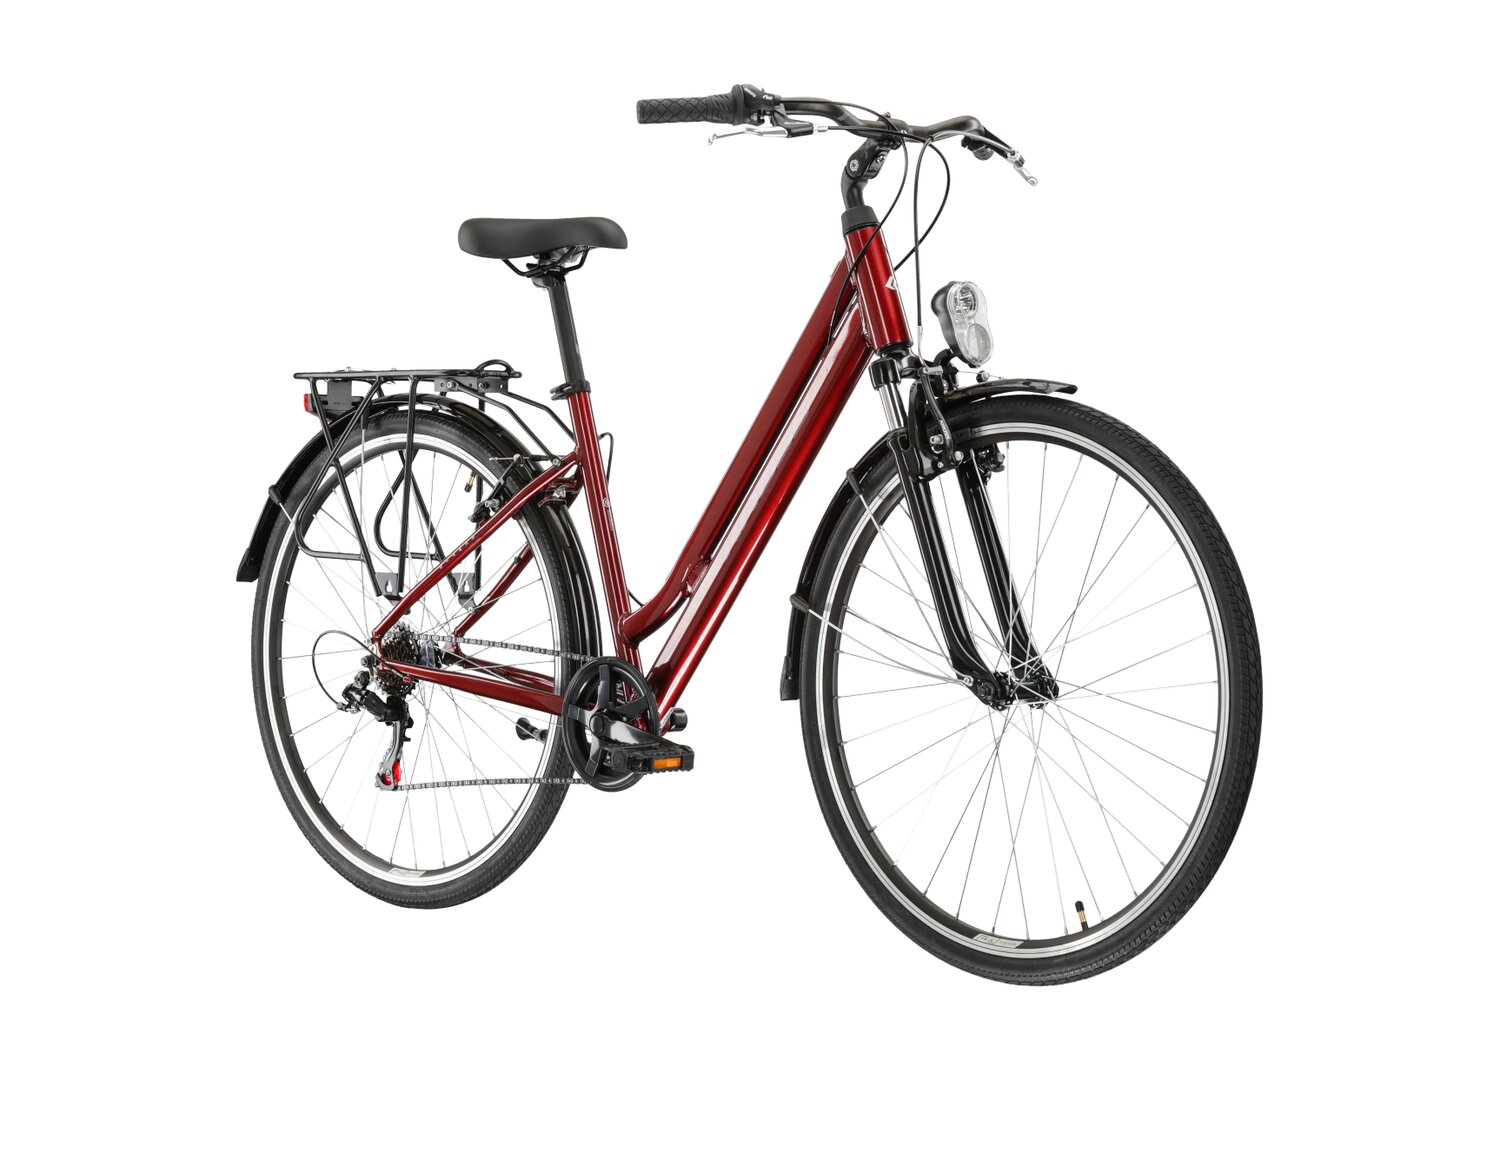  Rower miejski KROSS Sentio 1.0 na aluminiowej ramie w kolorze rubinowym wyposażony w osprzęt Shimano